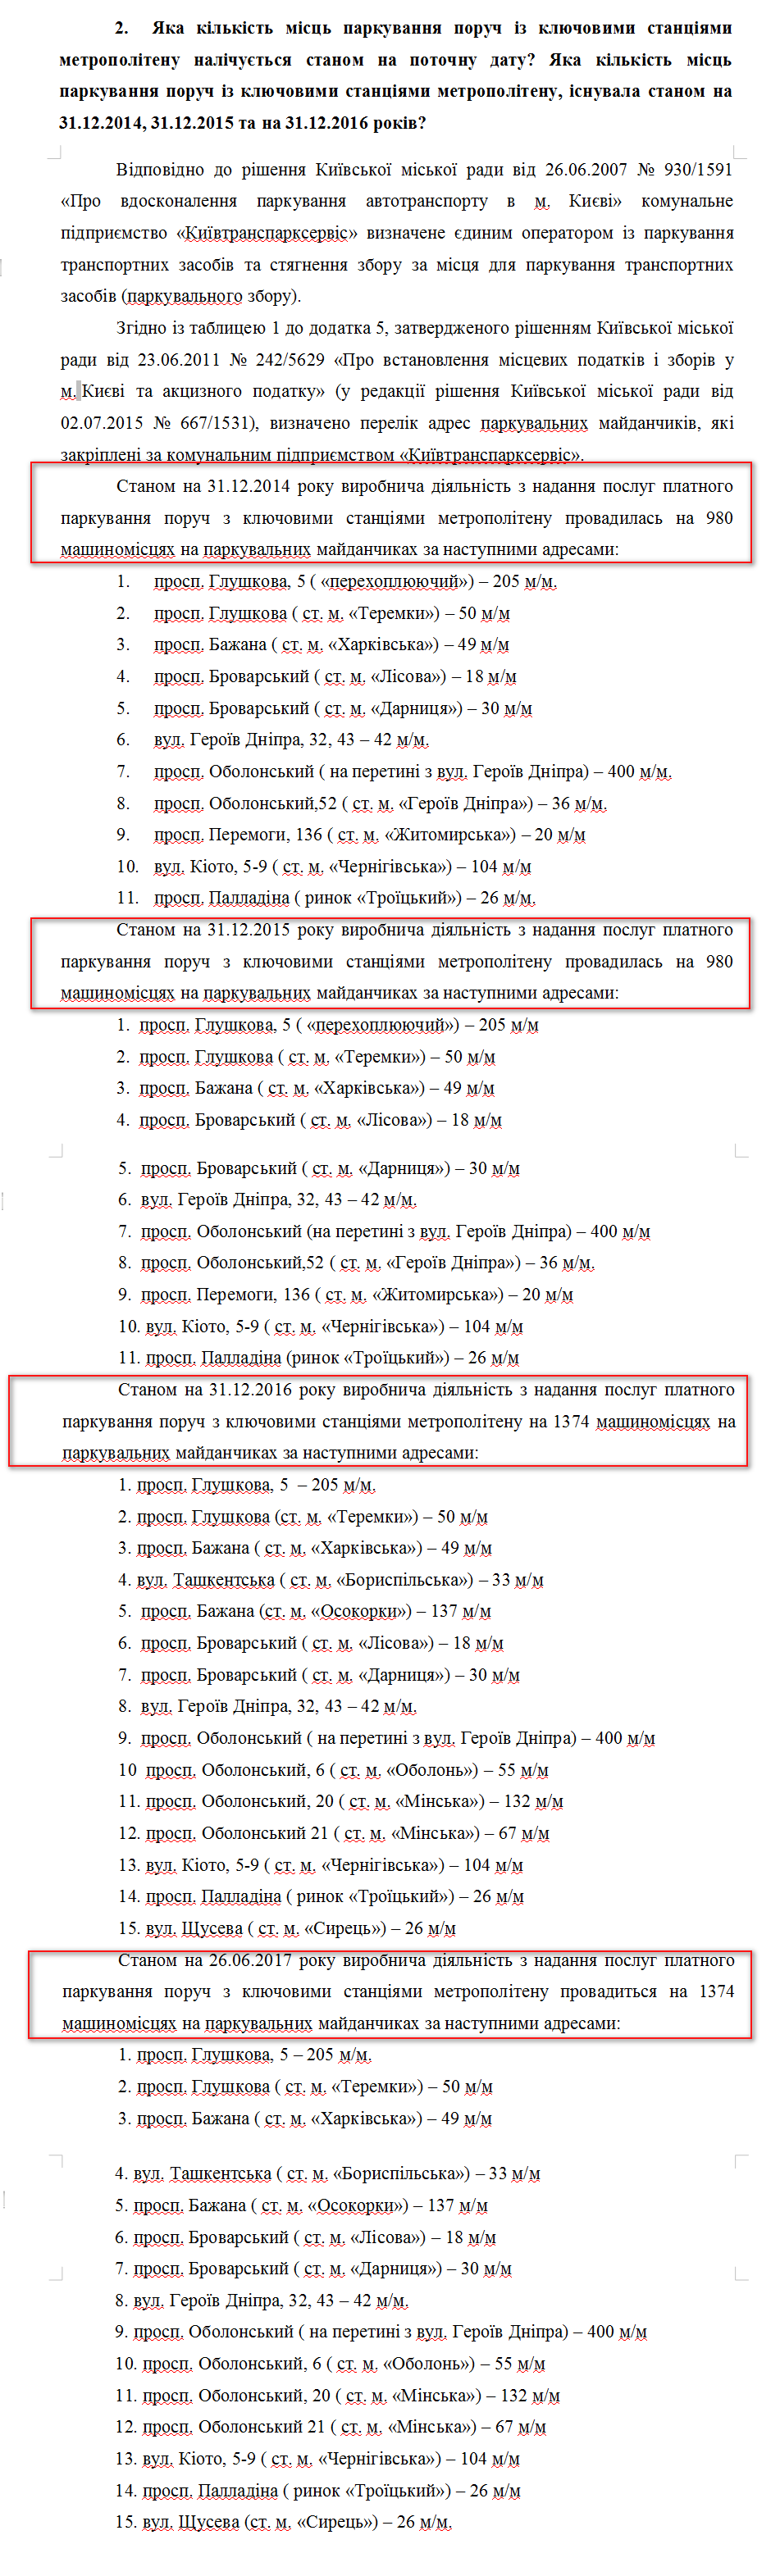 Лист виконавчого органу Київської міської ради (Київської міської державної адміністрації) від 13 липня 2017 року